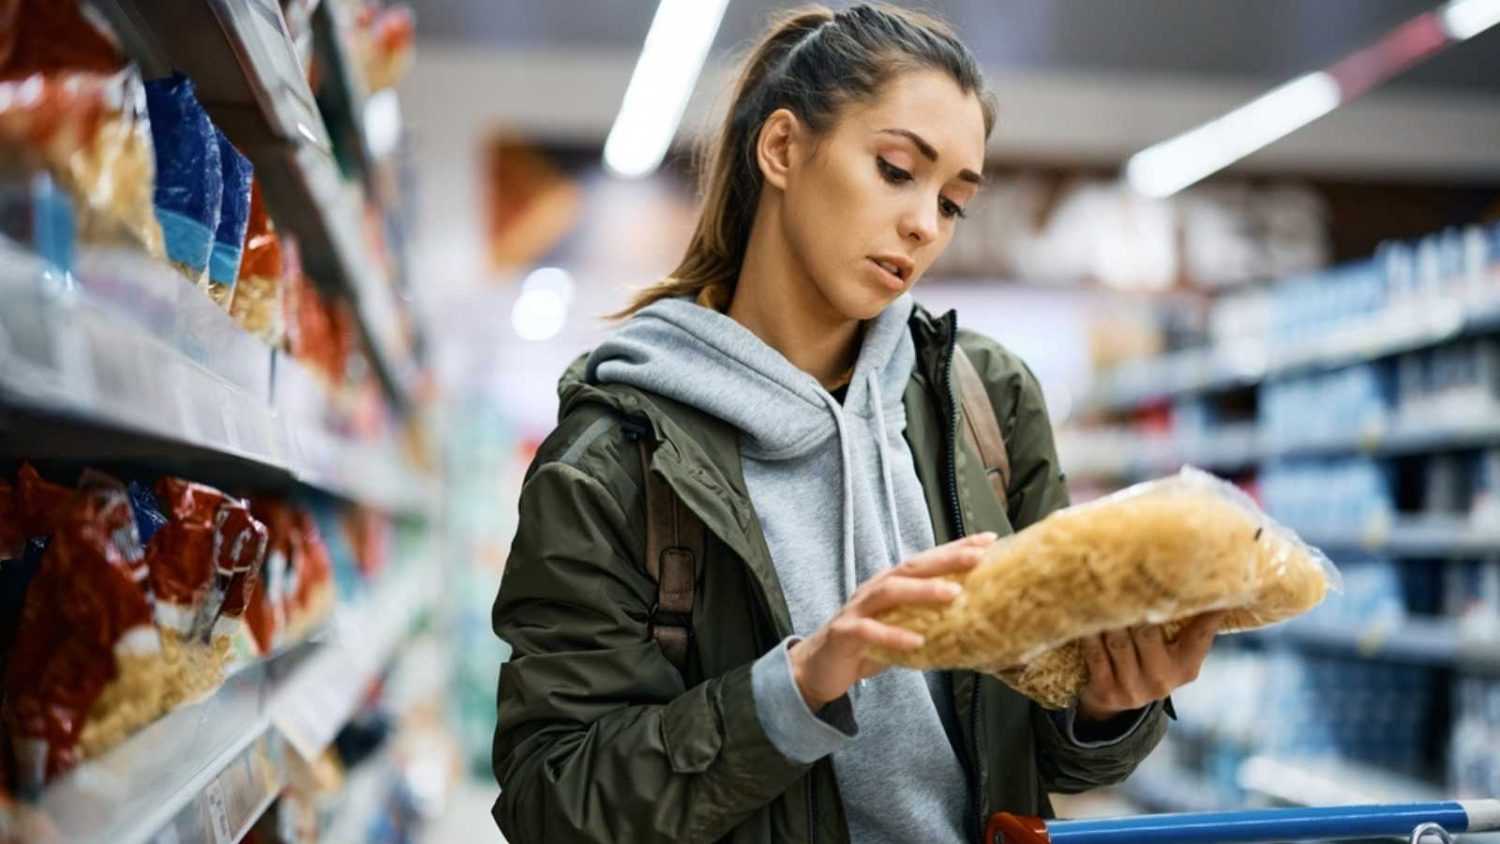 Woman buying Pasta